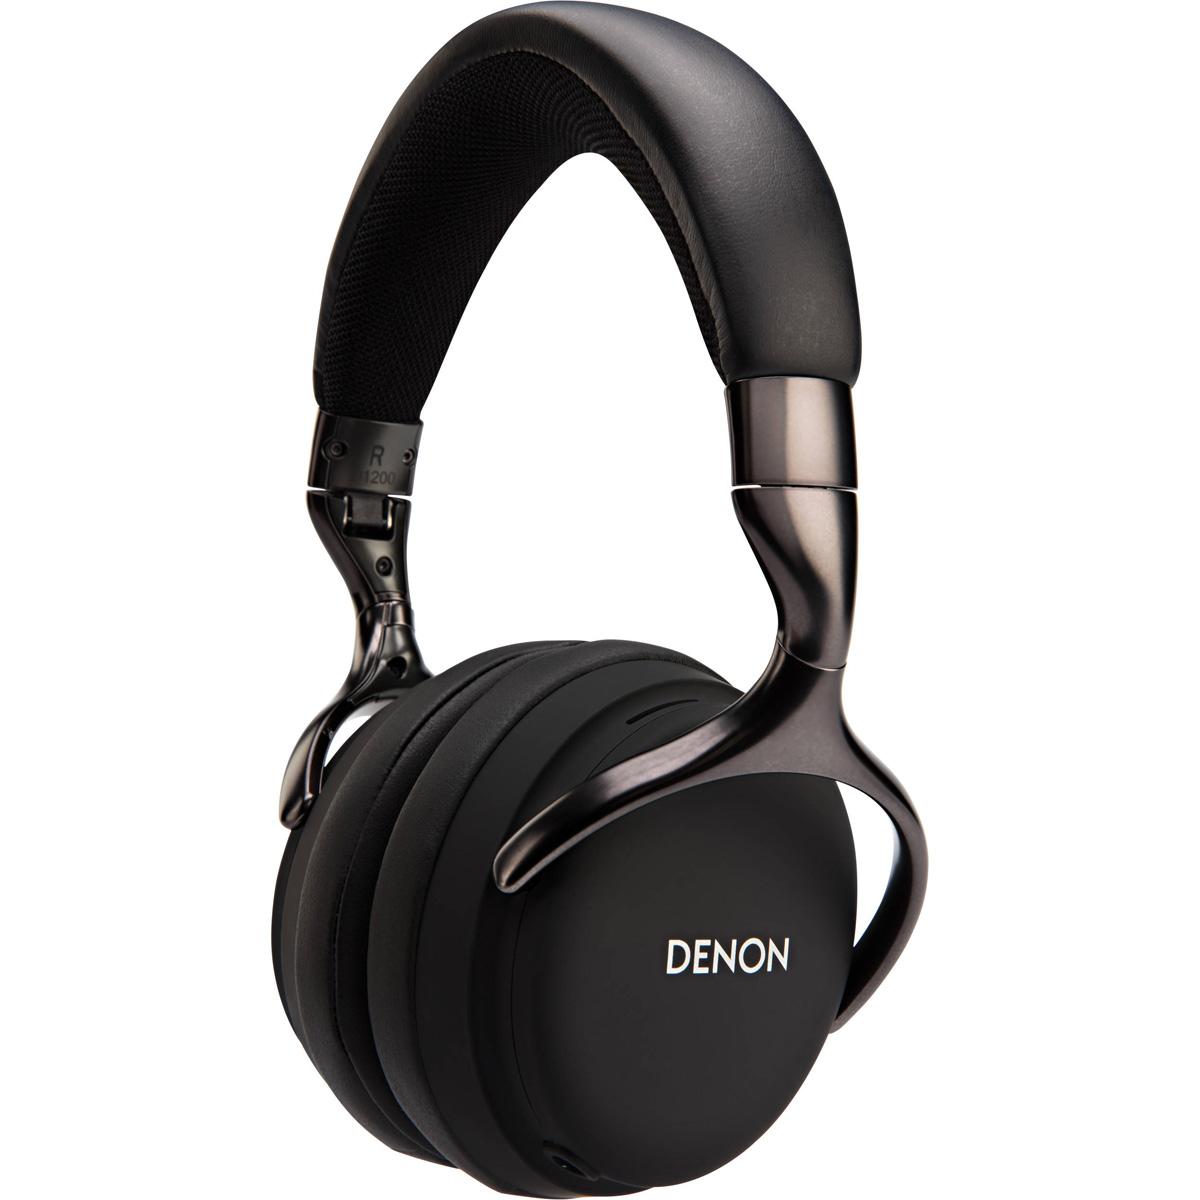 Denon AH-D1200 Over-Ear Headphone for $59.99 Shipped